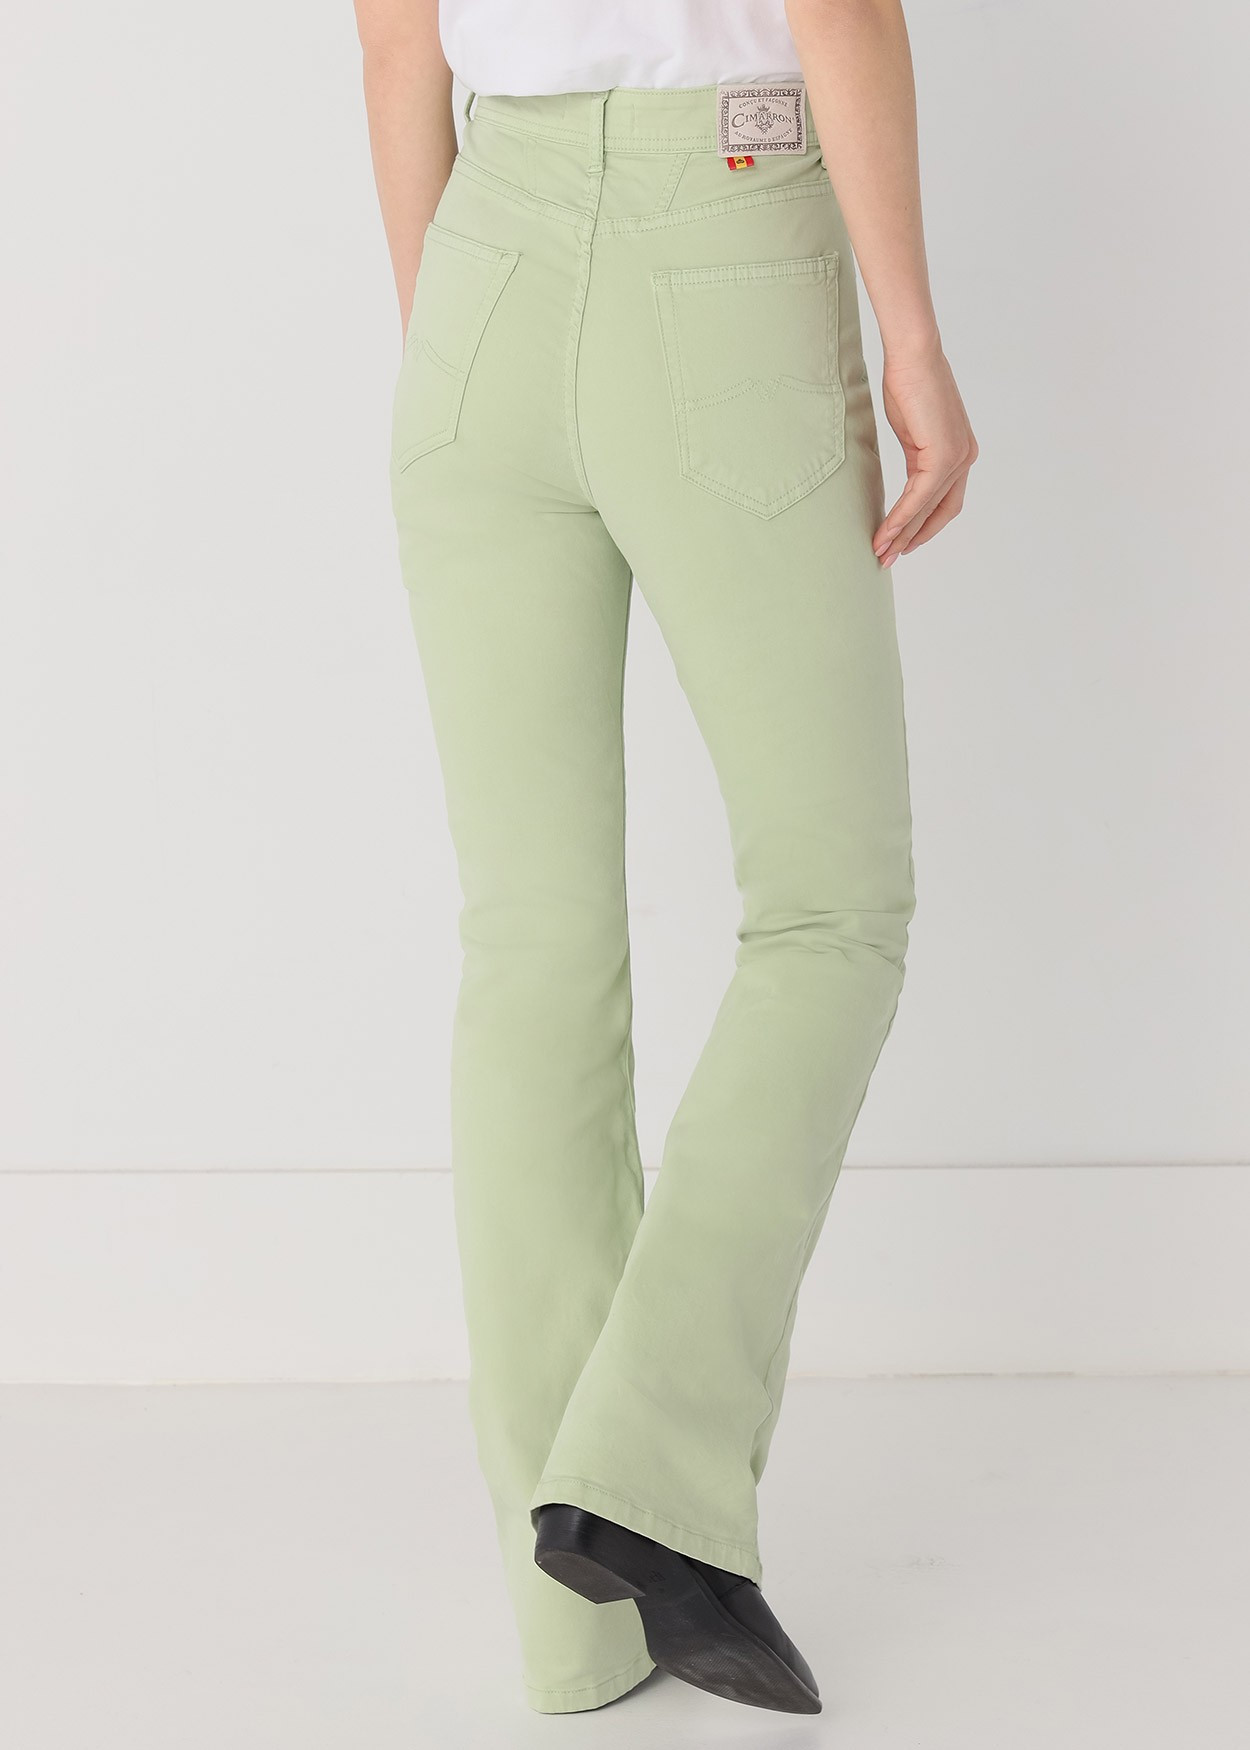 Pantalon de couleur Gracia-Nectar | Taille haute - Boot Cut | Taille en pouces Cimarron